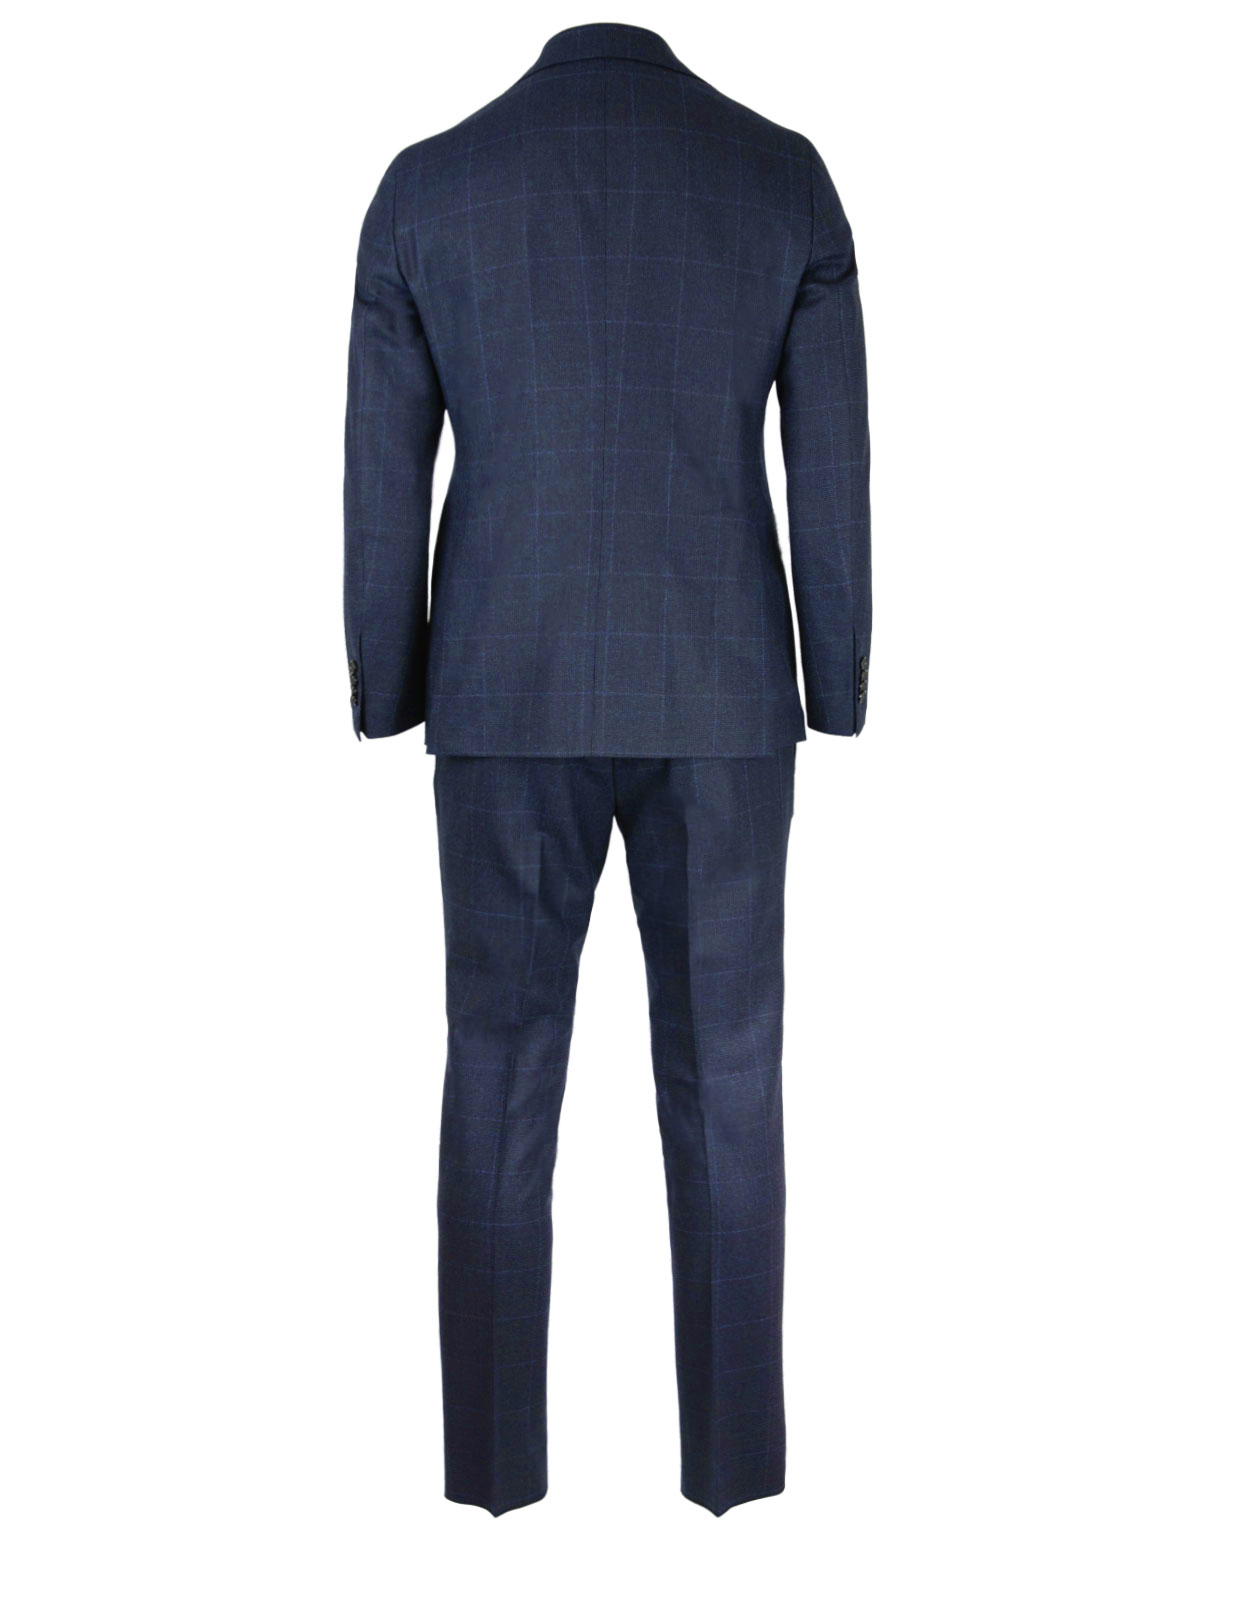 Vesuvio 3-piece Suit Wool Dark Blue Check